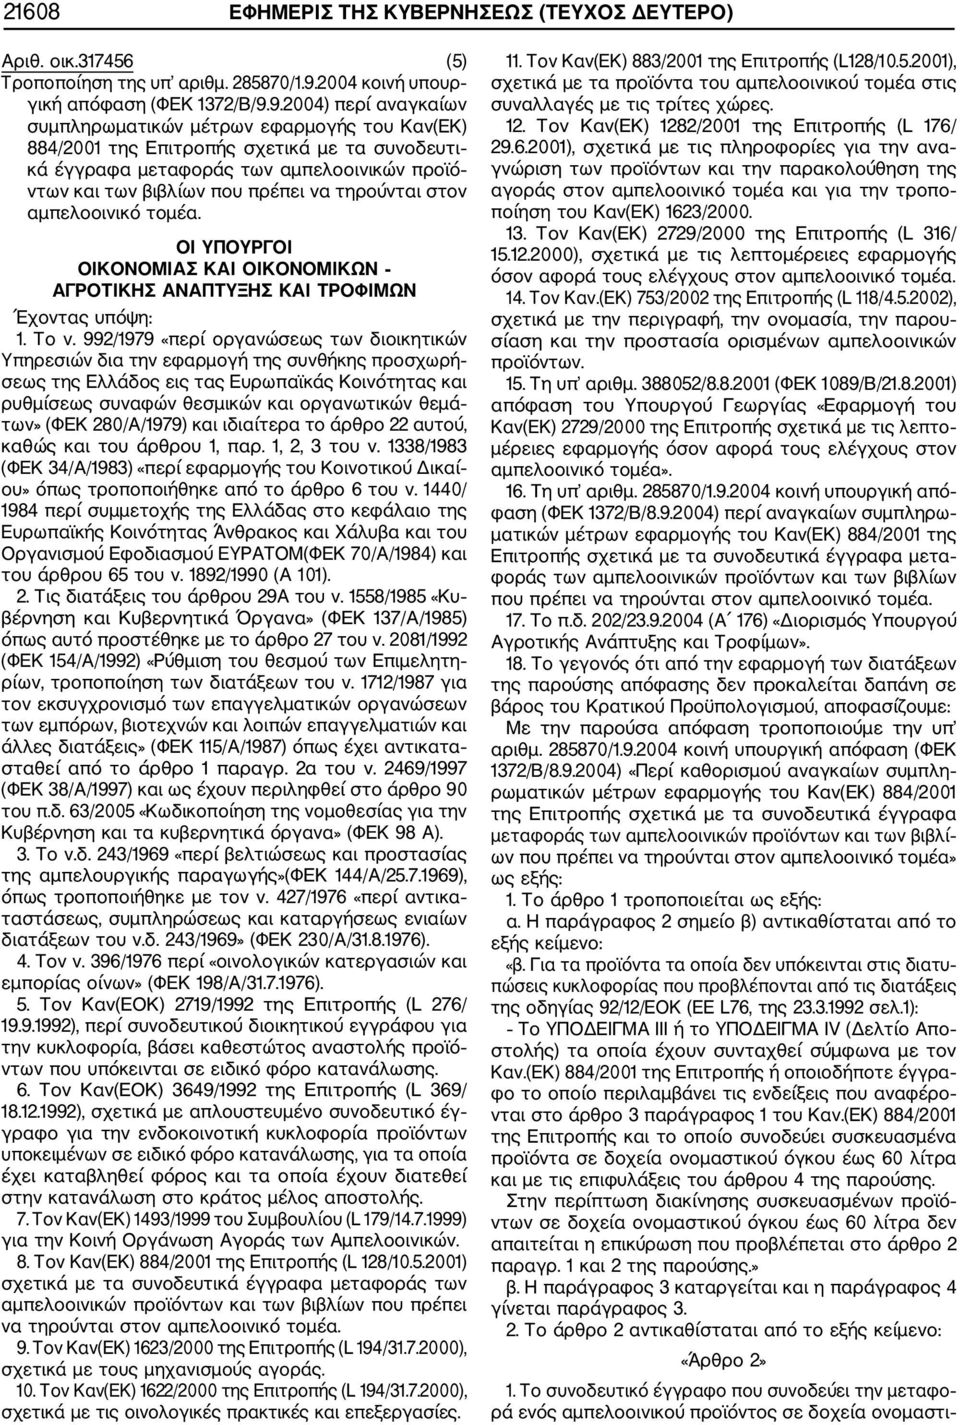 9.2004) περί αναγκαίων συμπληρωματικών μέτρων εφαρμογής του Καν(ΕΚ) 884/2001 της Επιτροπής σχετικά με τα συνοδευτι κά έγγραφα μεταφοράς των αμπελοοινικών προϊό ντων και των βιβλίων που πρέπει να